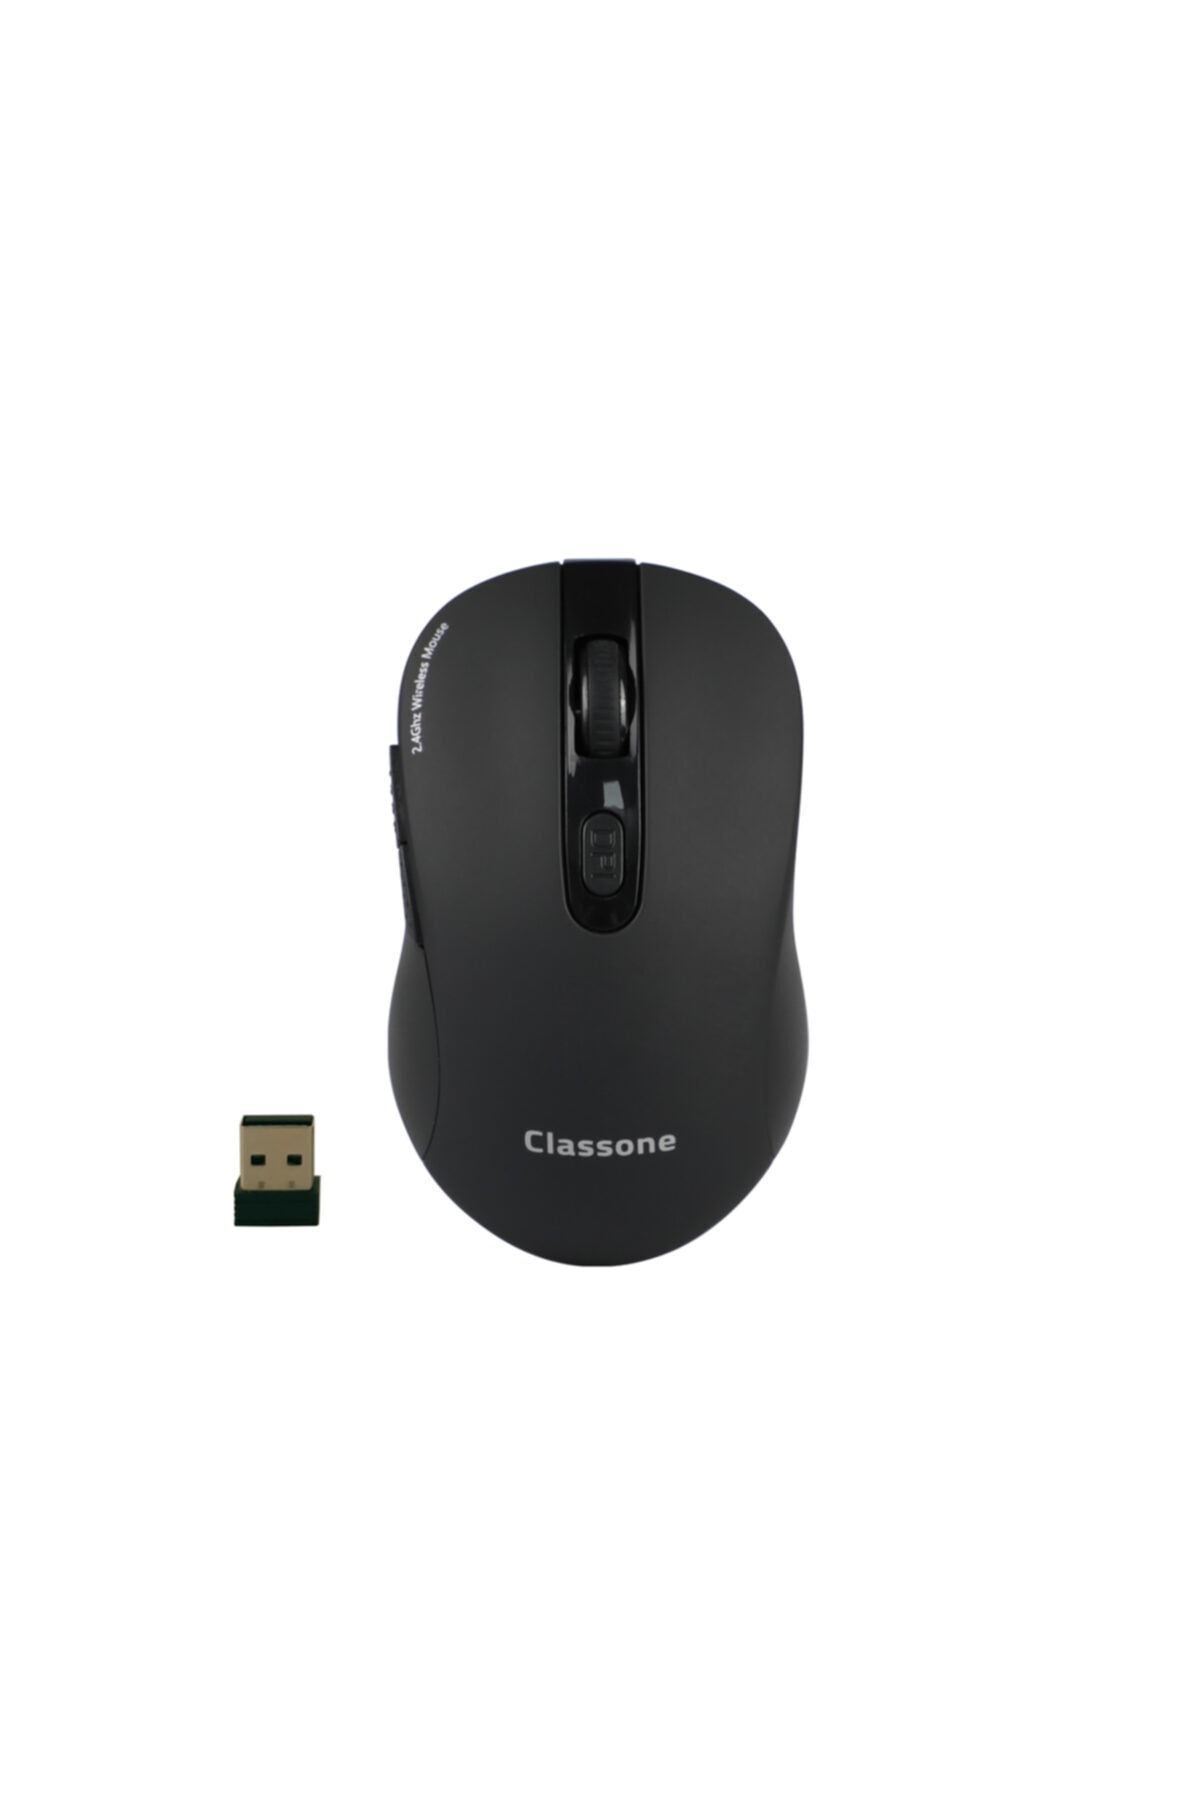 Classone Wm400 Serisi Kablosuz Mouse -siyah